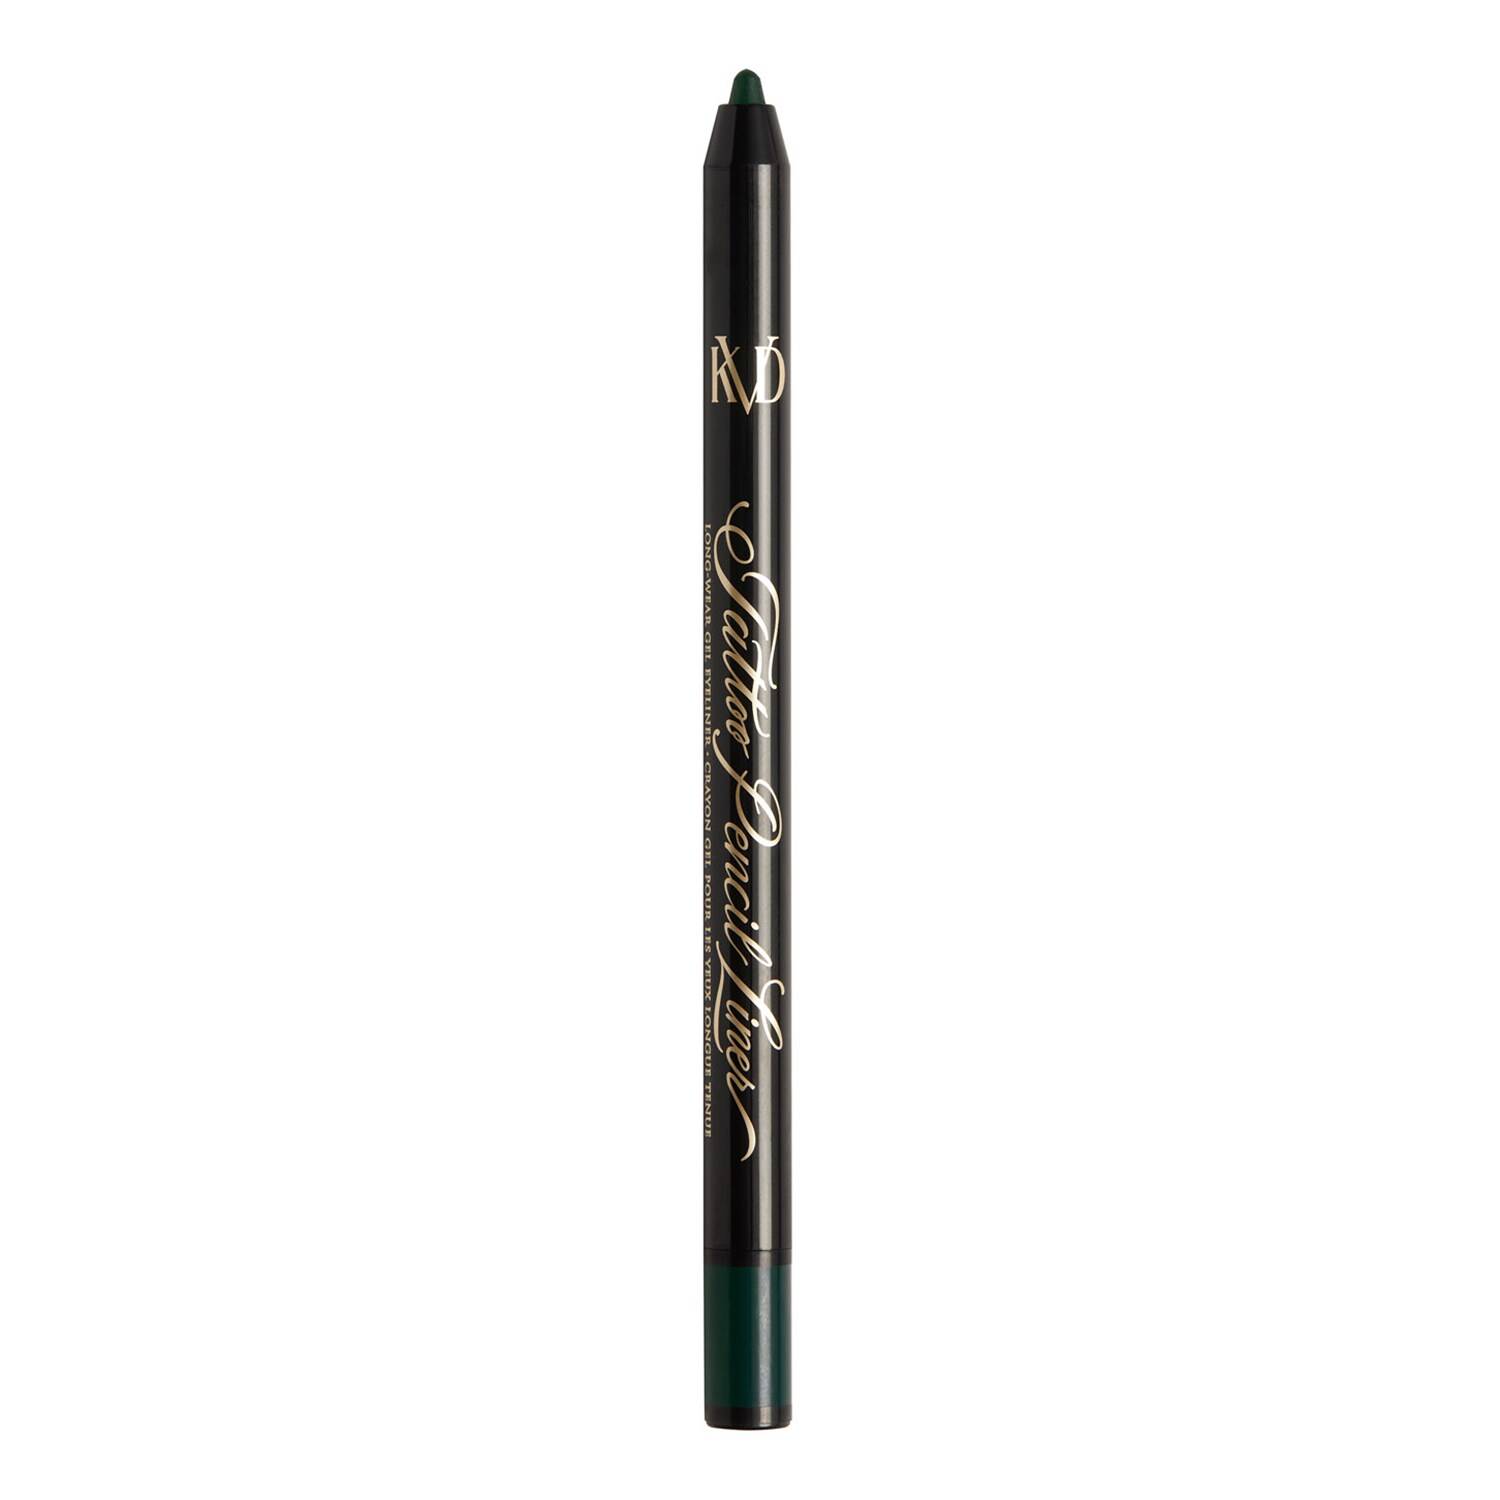 Kvd Beauty Tattoo Pencil Liner Waterproof Long-Wear Gel Eyeliner 0.5G Verdetta Green